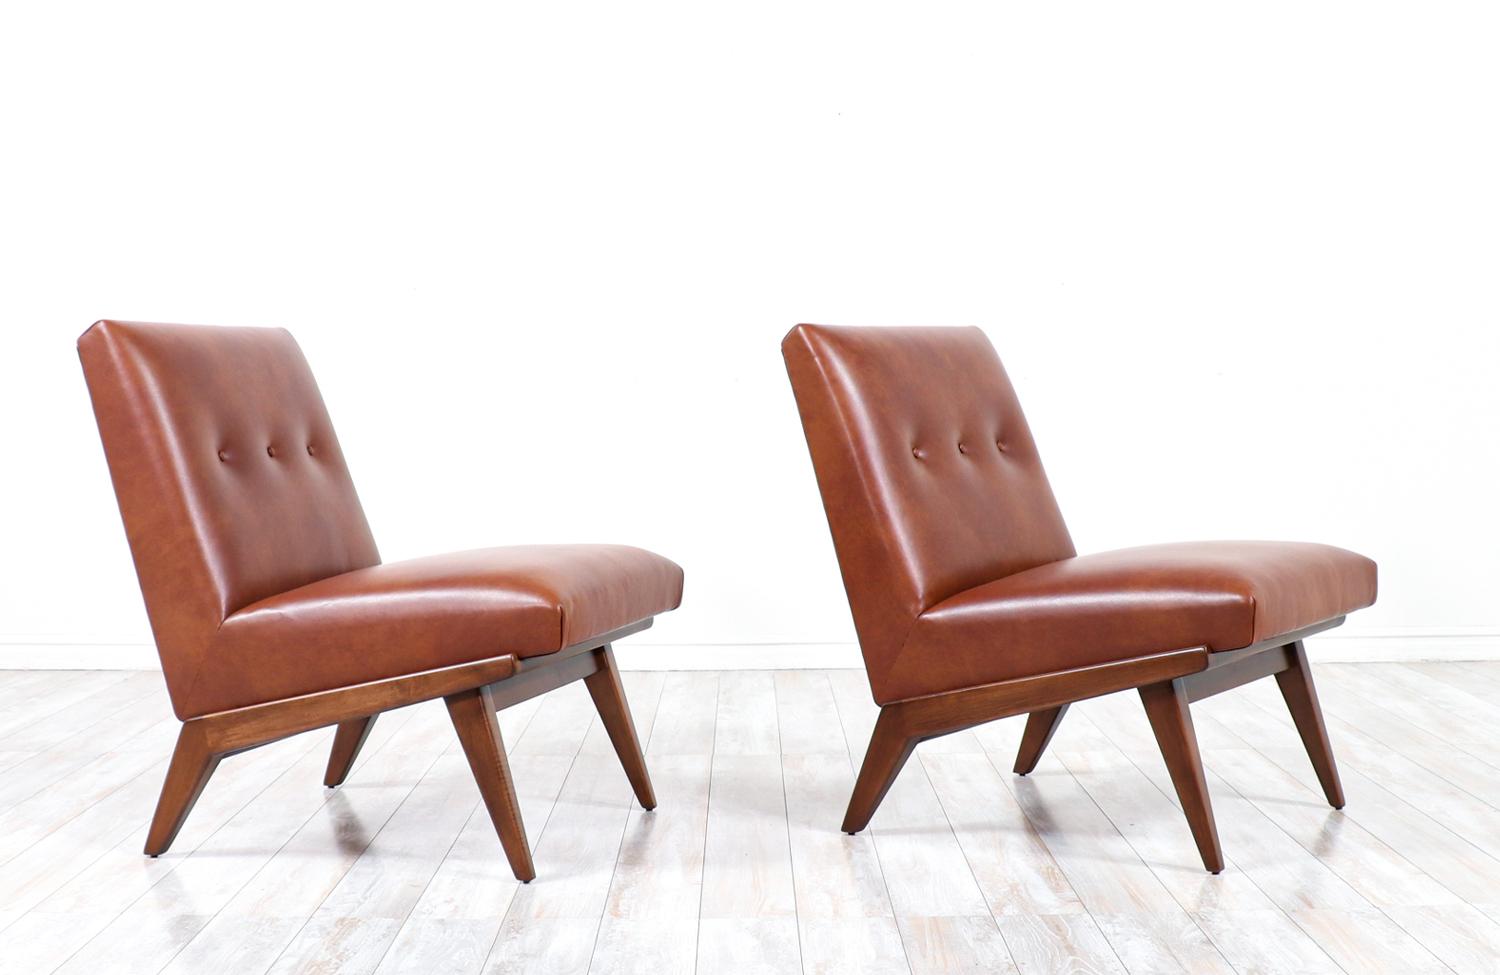 Cognacfarbene Sessel ohne Armlehne aus Leder von Jens Risom für Knoll

________________________________________

Die Umgestaltung eines Mid-Century Modern-Möbels ist wie die Wiederbelebung der Geschichte, und wir gehen diese Reise mit Leidenschaft